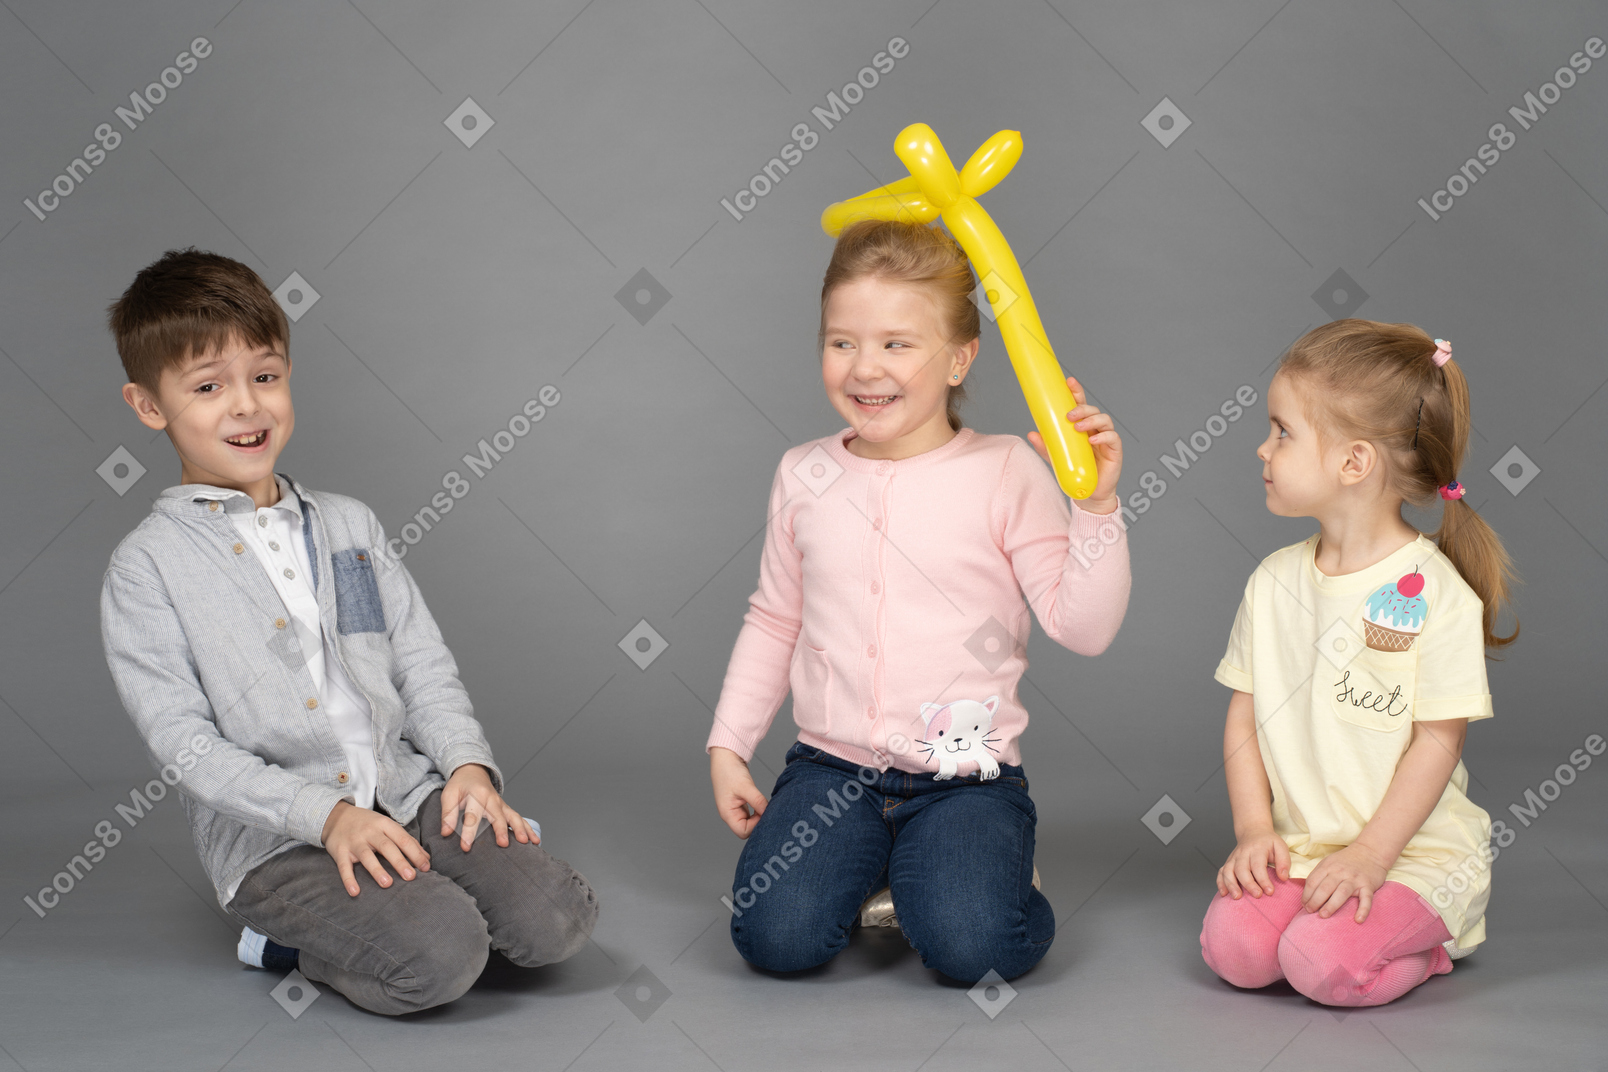 Enfants s'amusant à jouer avec un ballon jaune